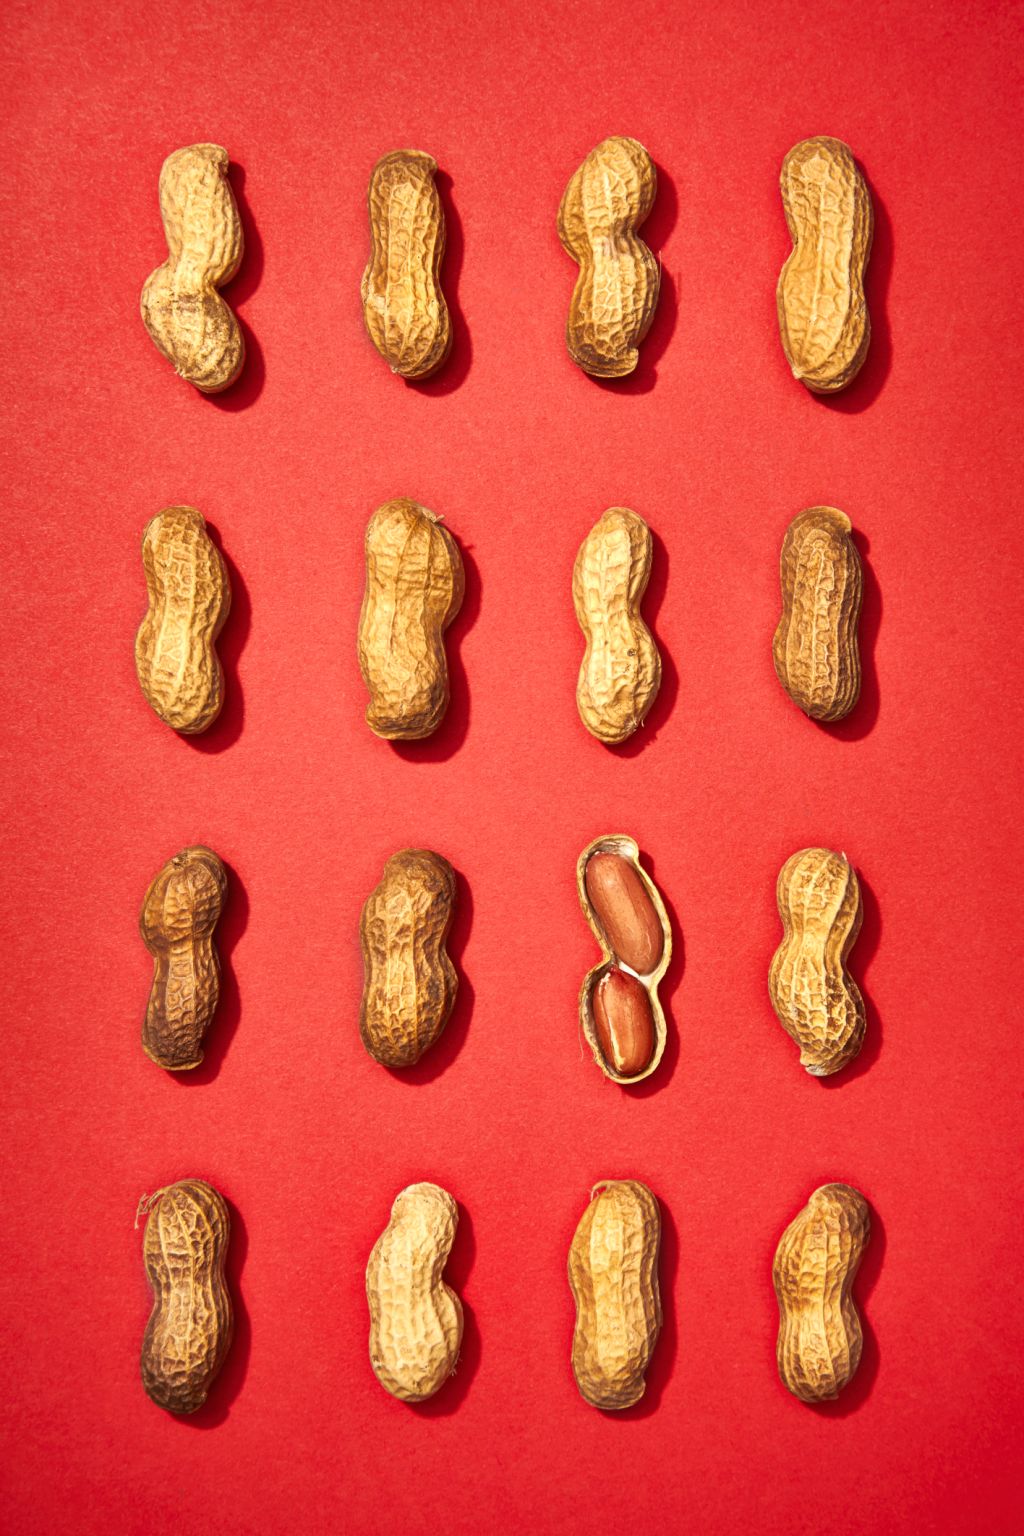 Grid of Peanuts